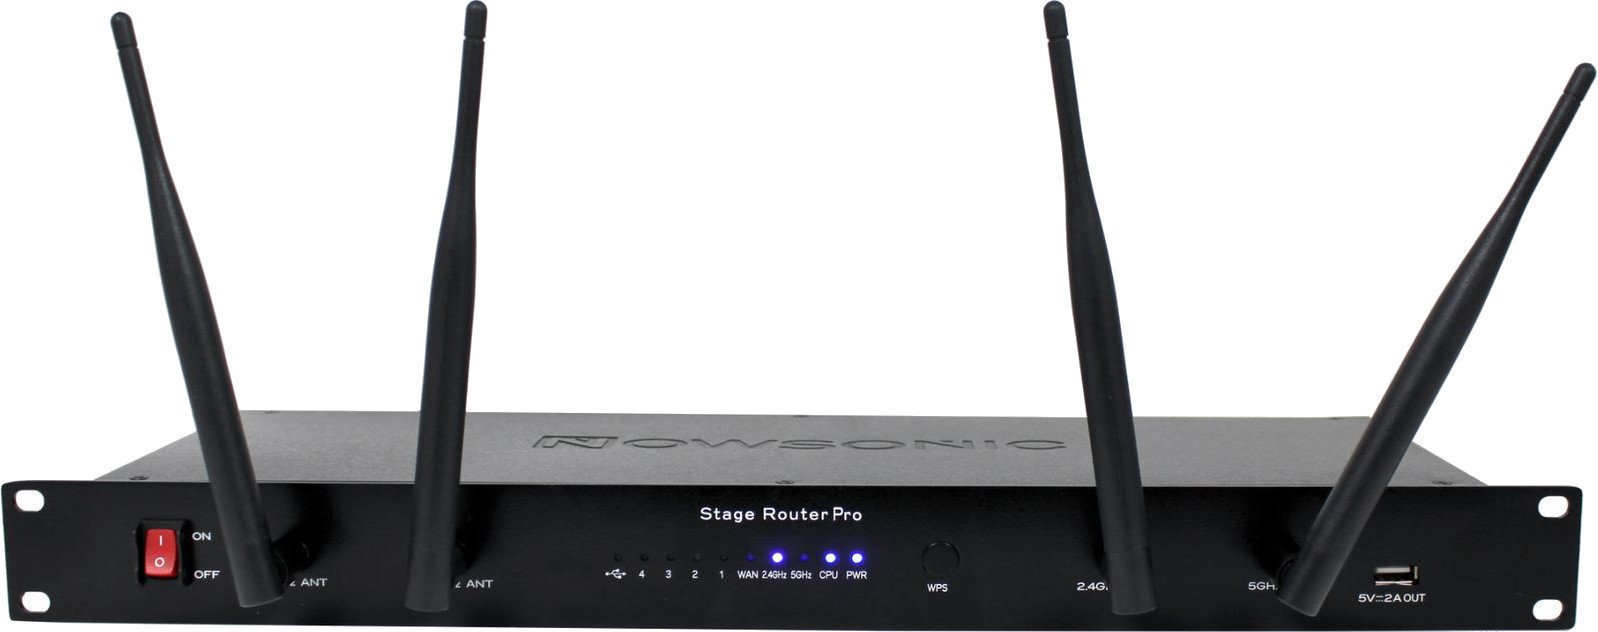 Antennensplitter für drahtlose Systeme Nowsonic Stage Router Pro